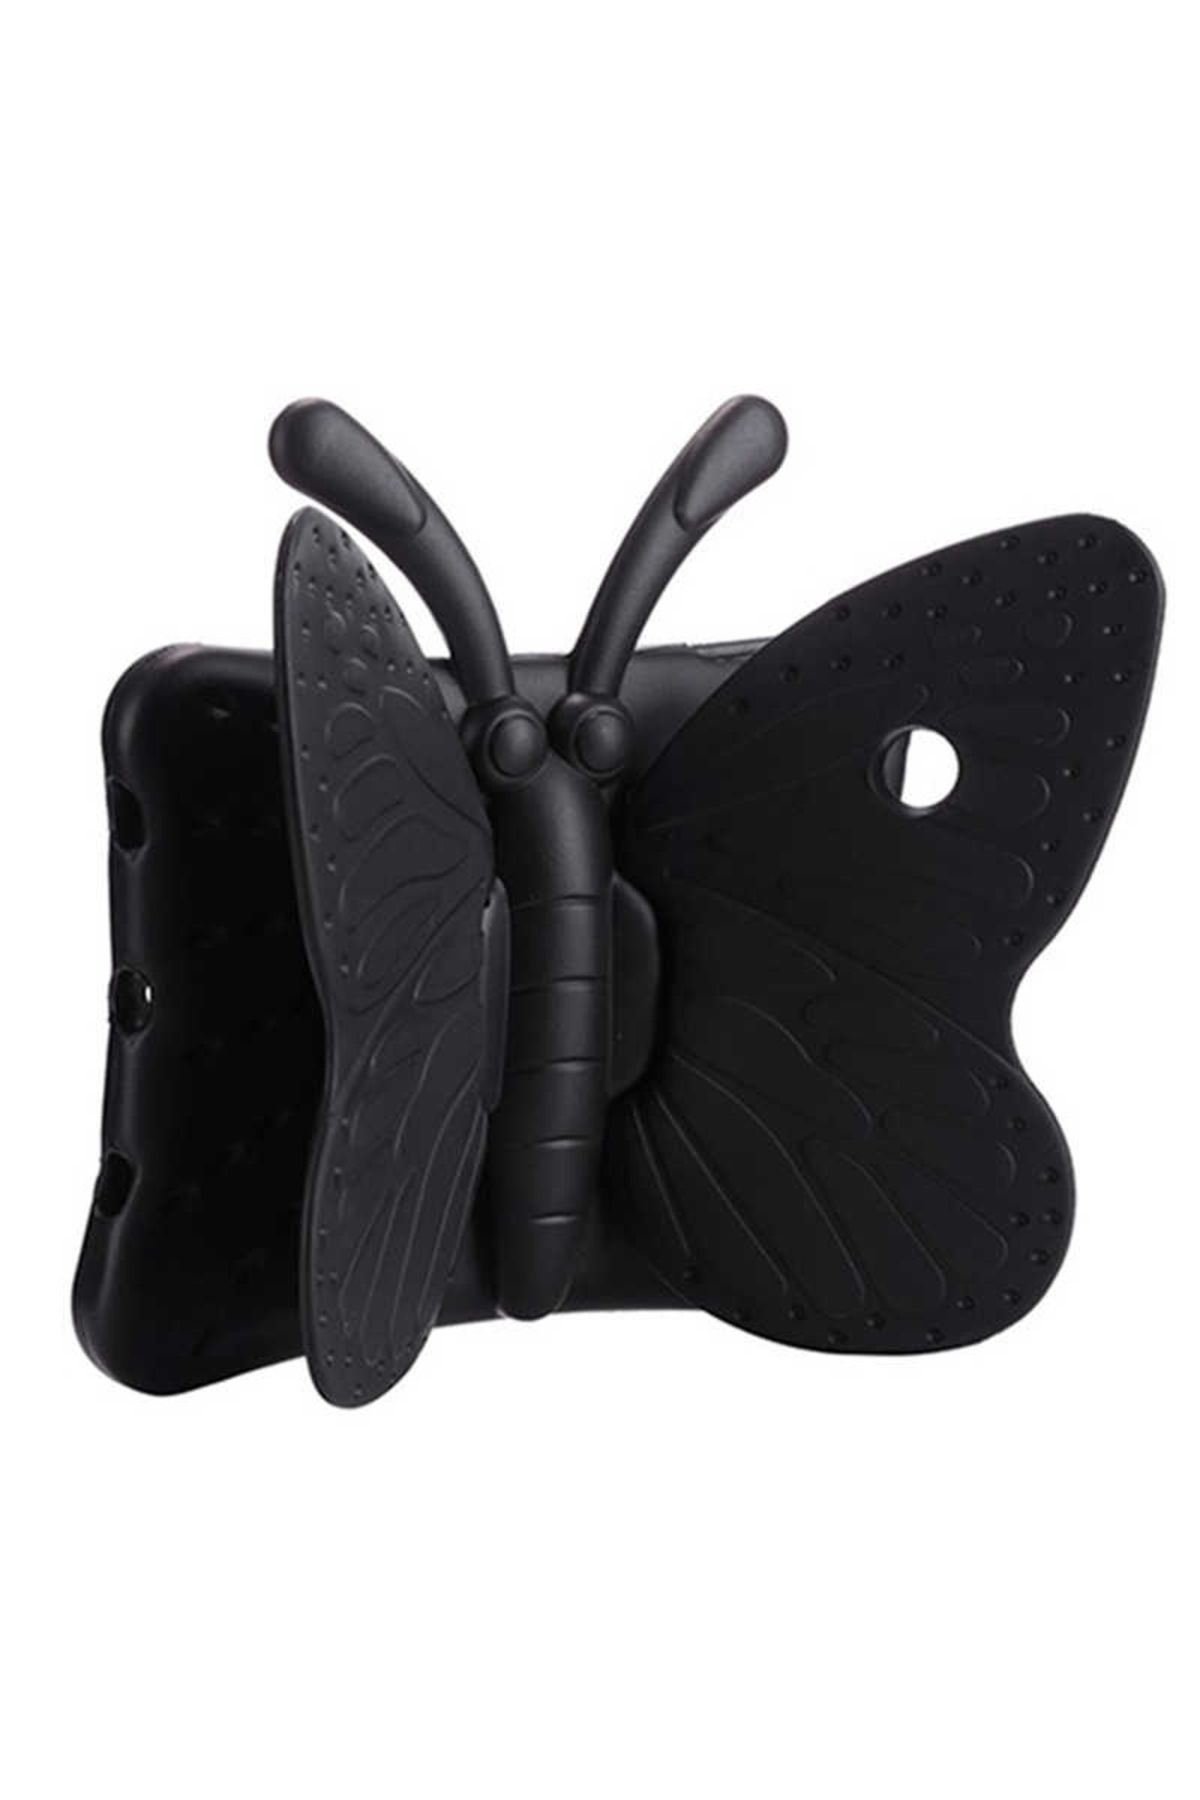 Lopard Samsung Galaxy Tab S6 Lite P610 Kelebek Butterfly Standlı ÇocuklaraTablet Kılıfı Kapak